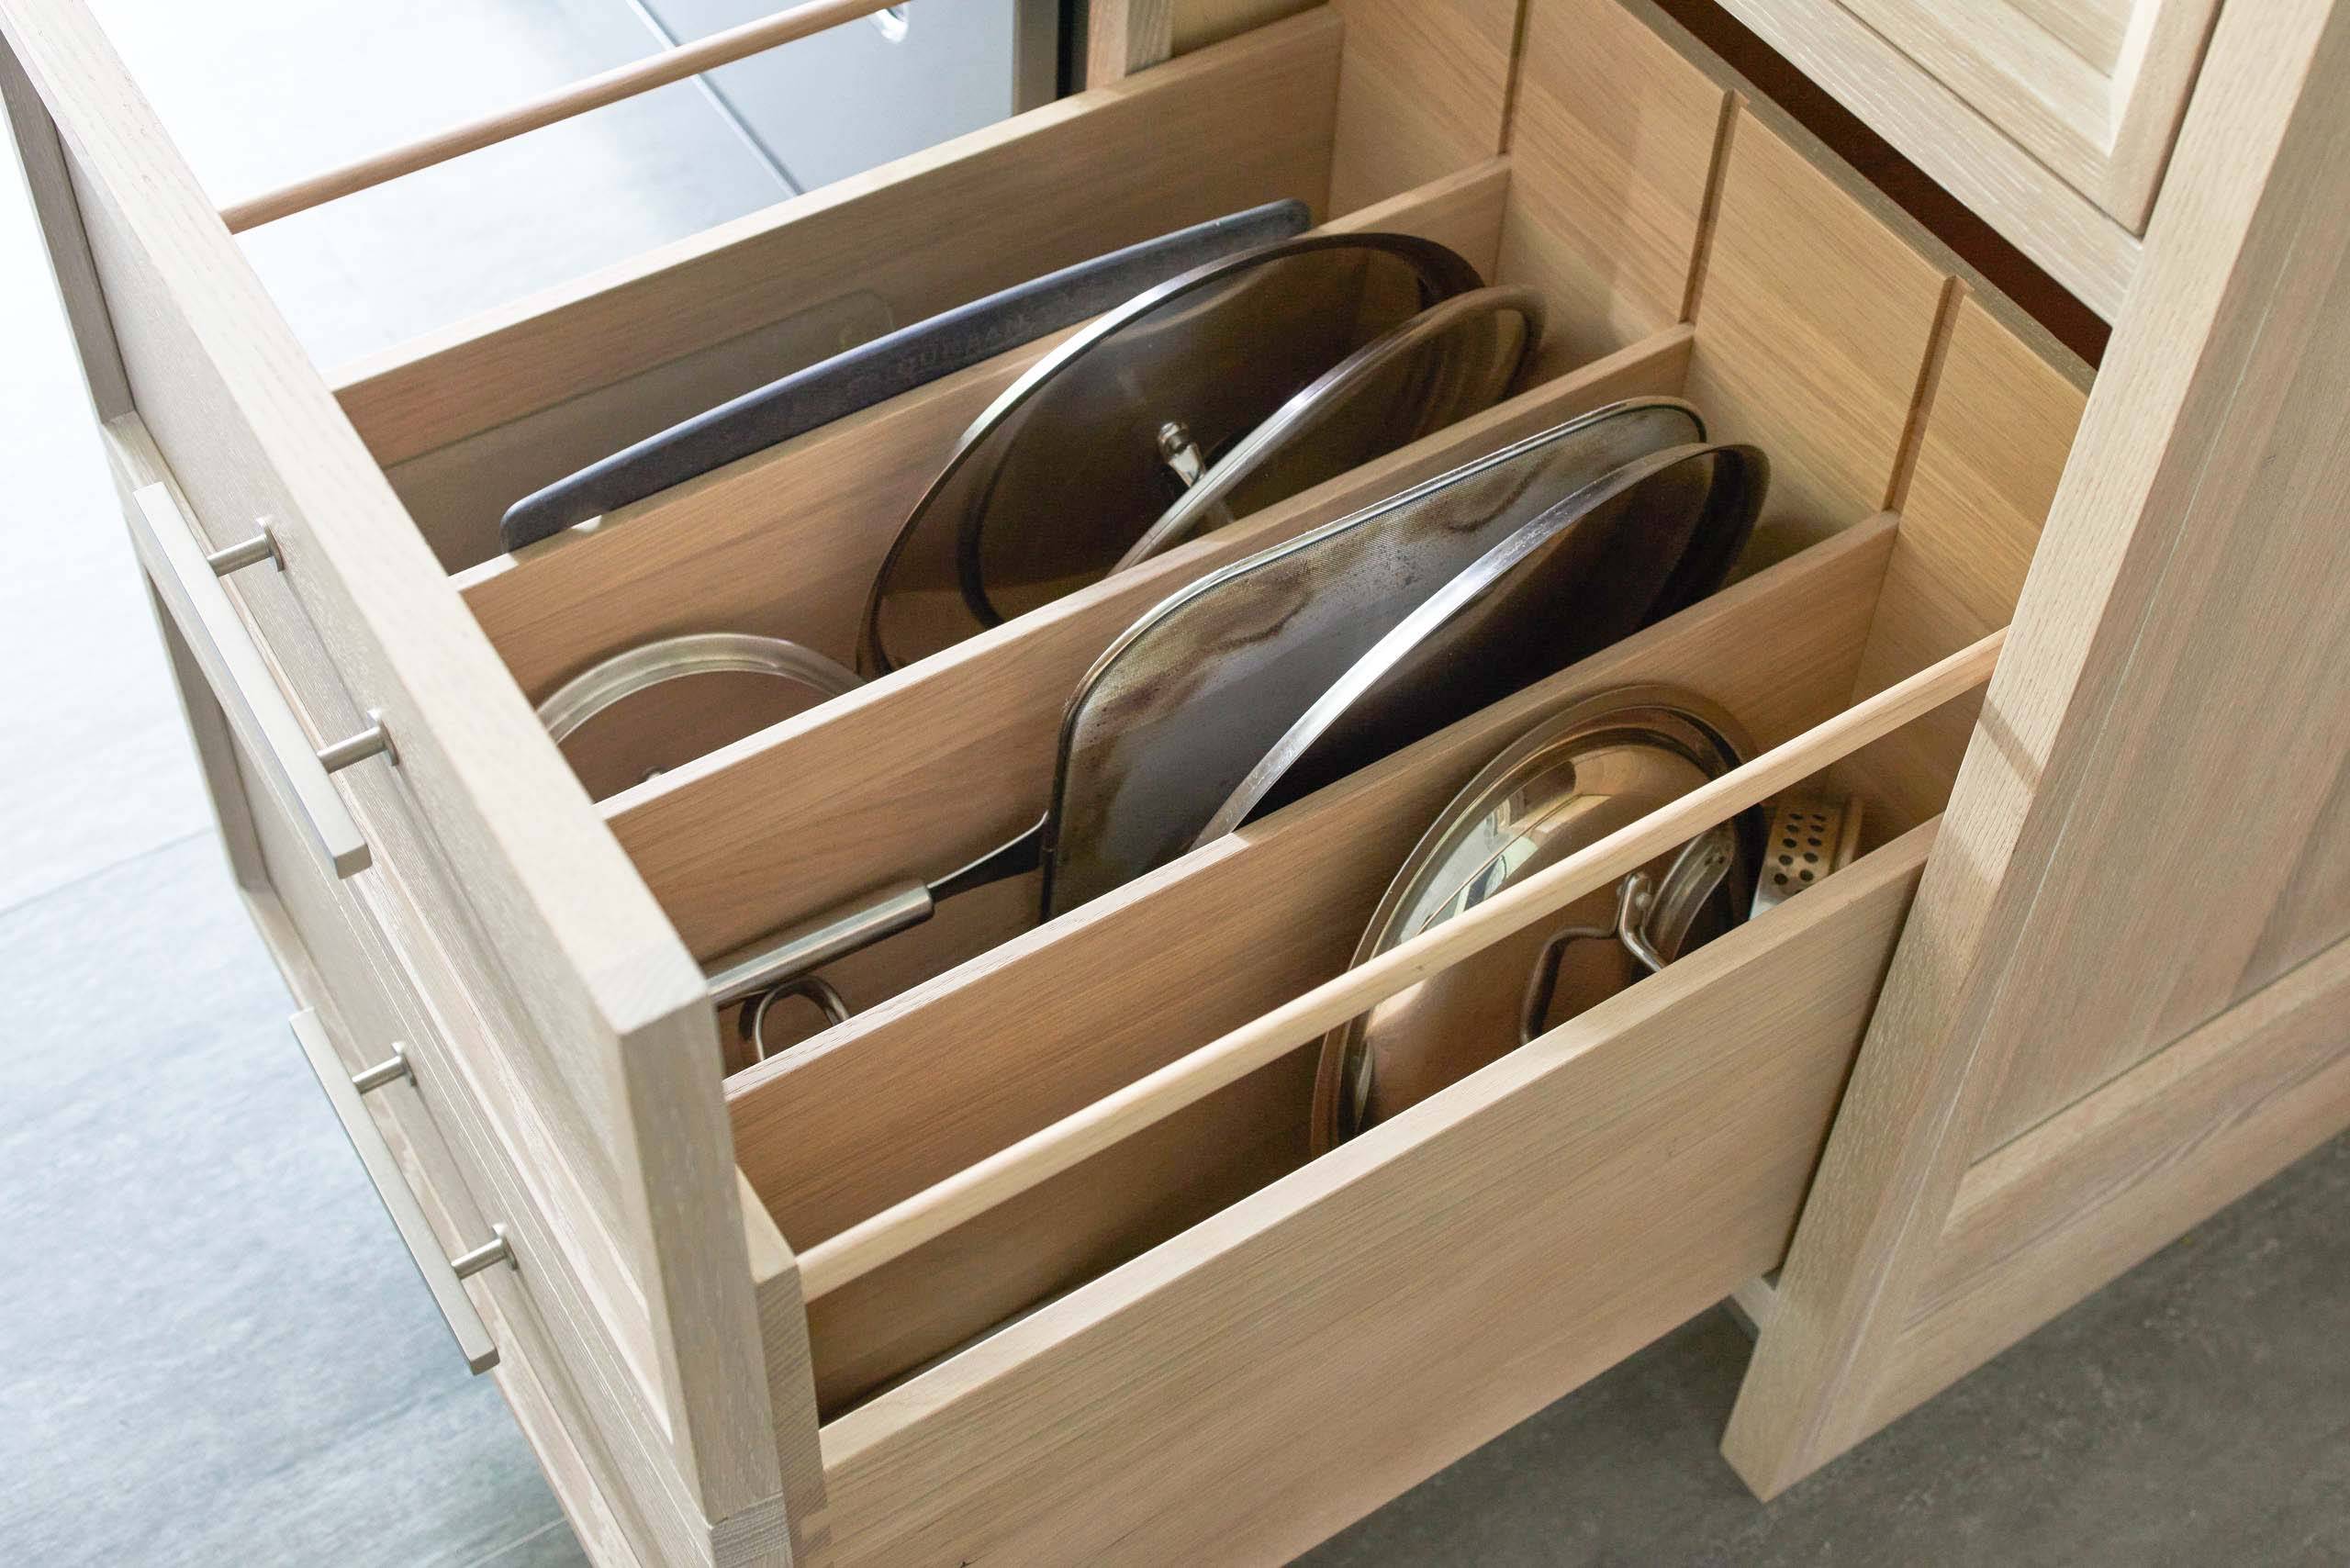 Как хранить крышки от кастрюль и сковородок на маленькой кухне: хранение на держателях и подставках, где сушить, идеи